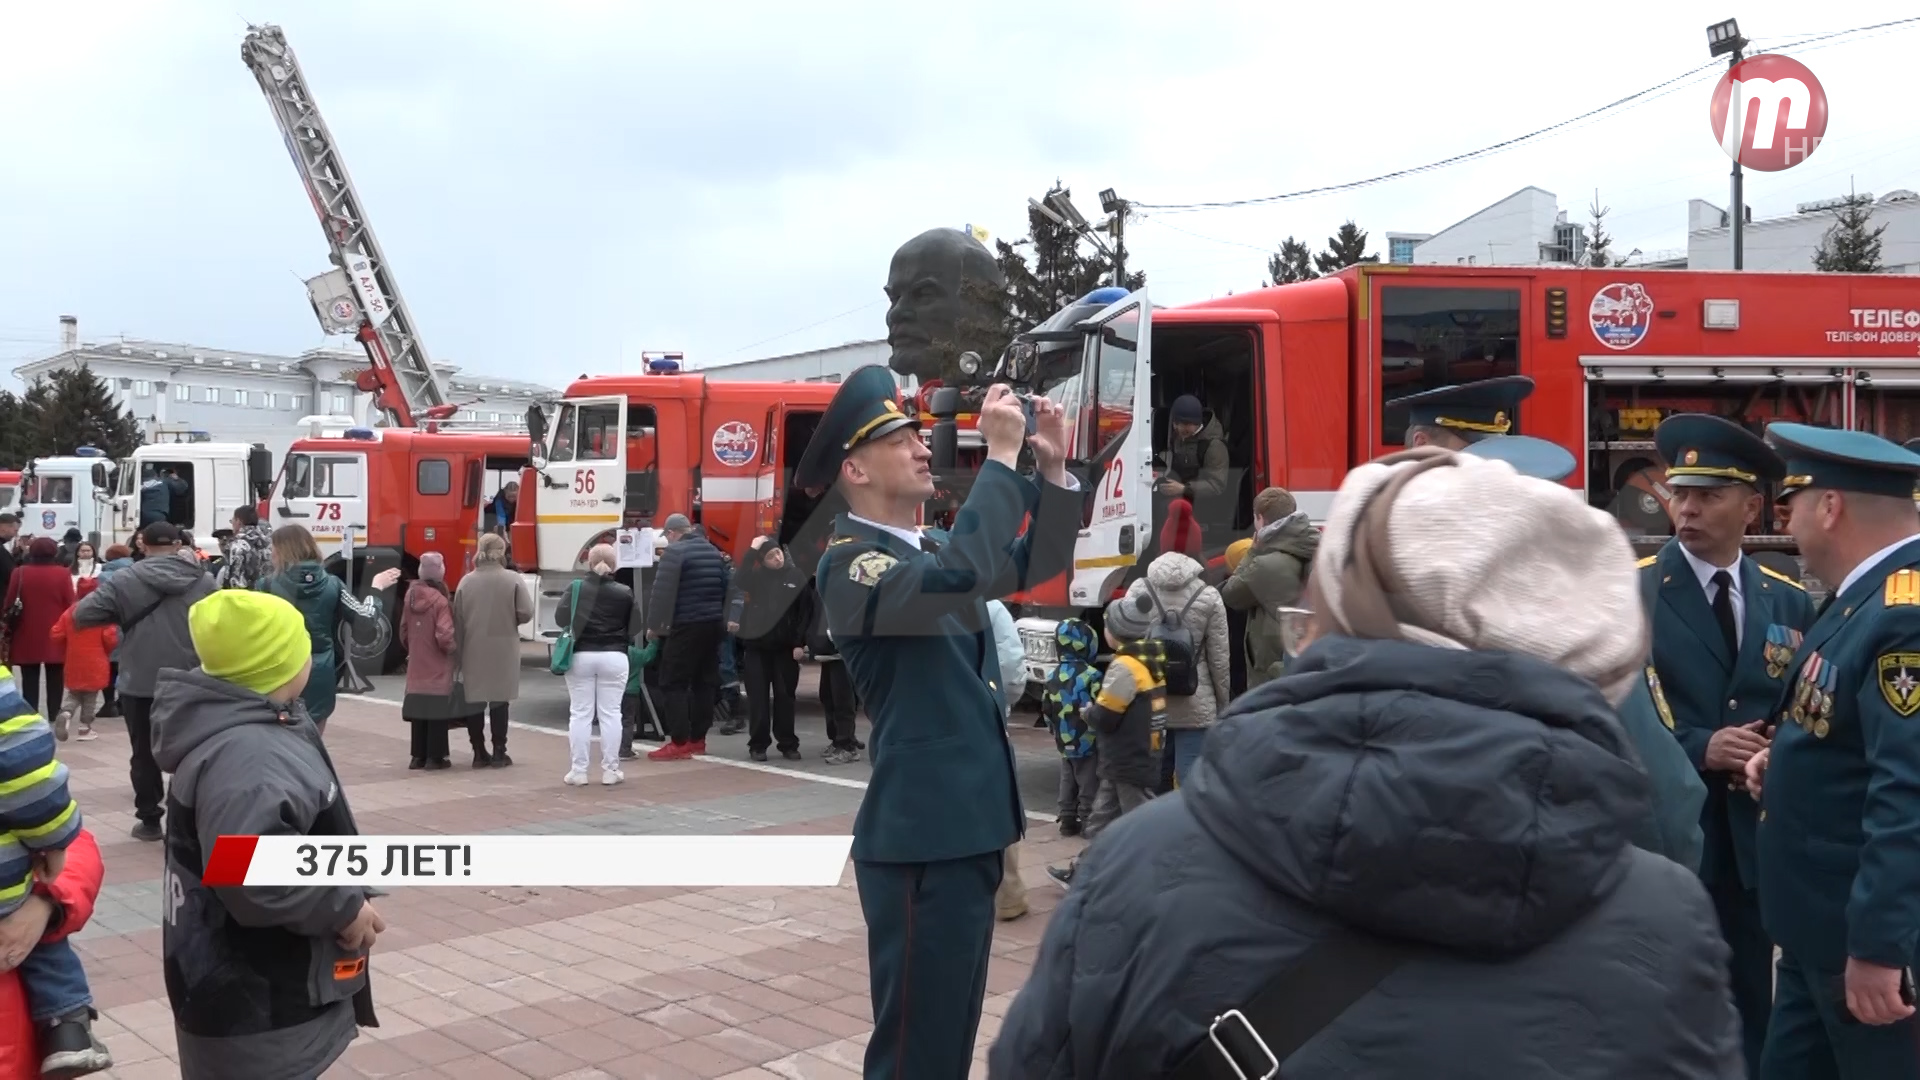 Пожарные устроили шоу на площади Советов